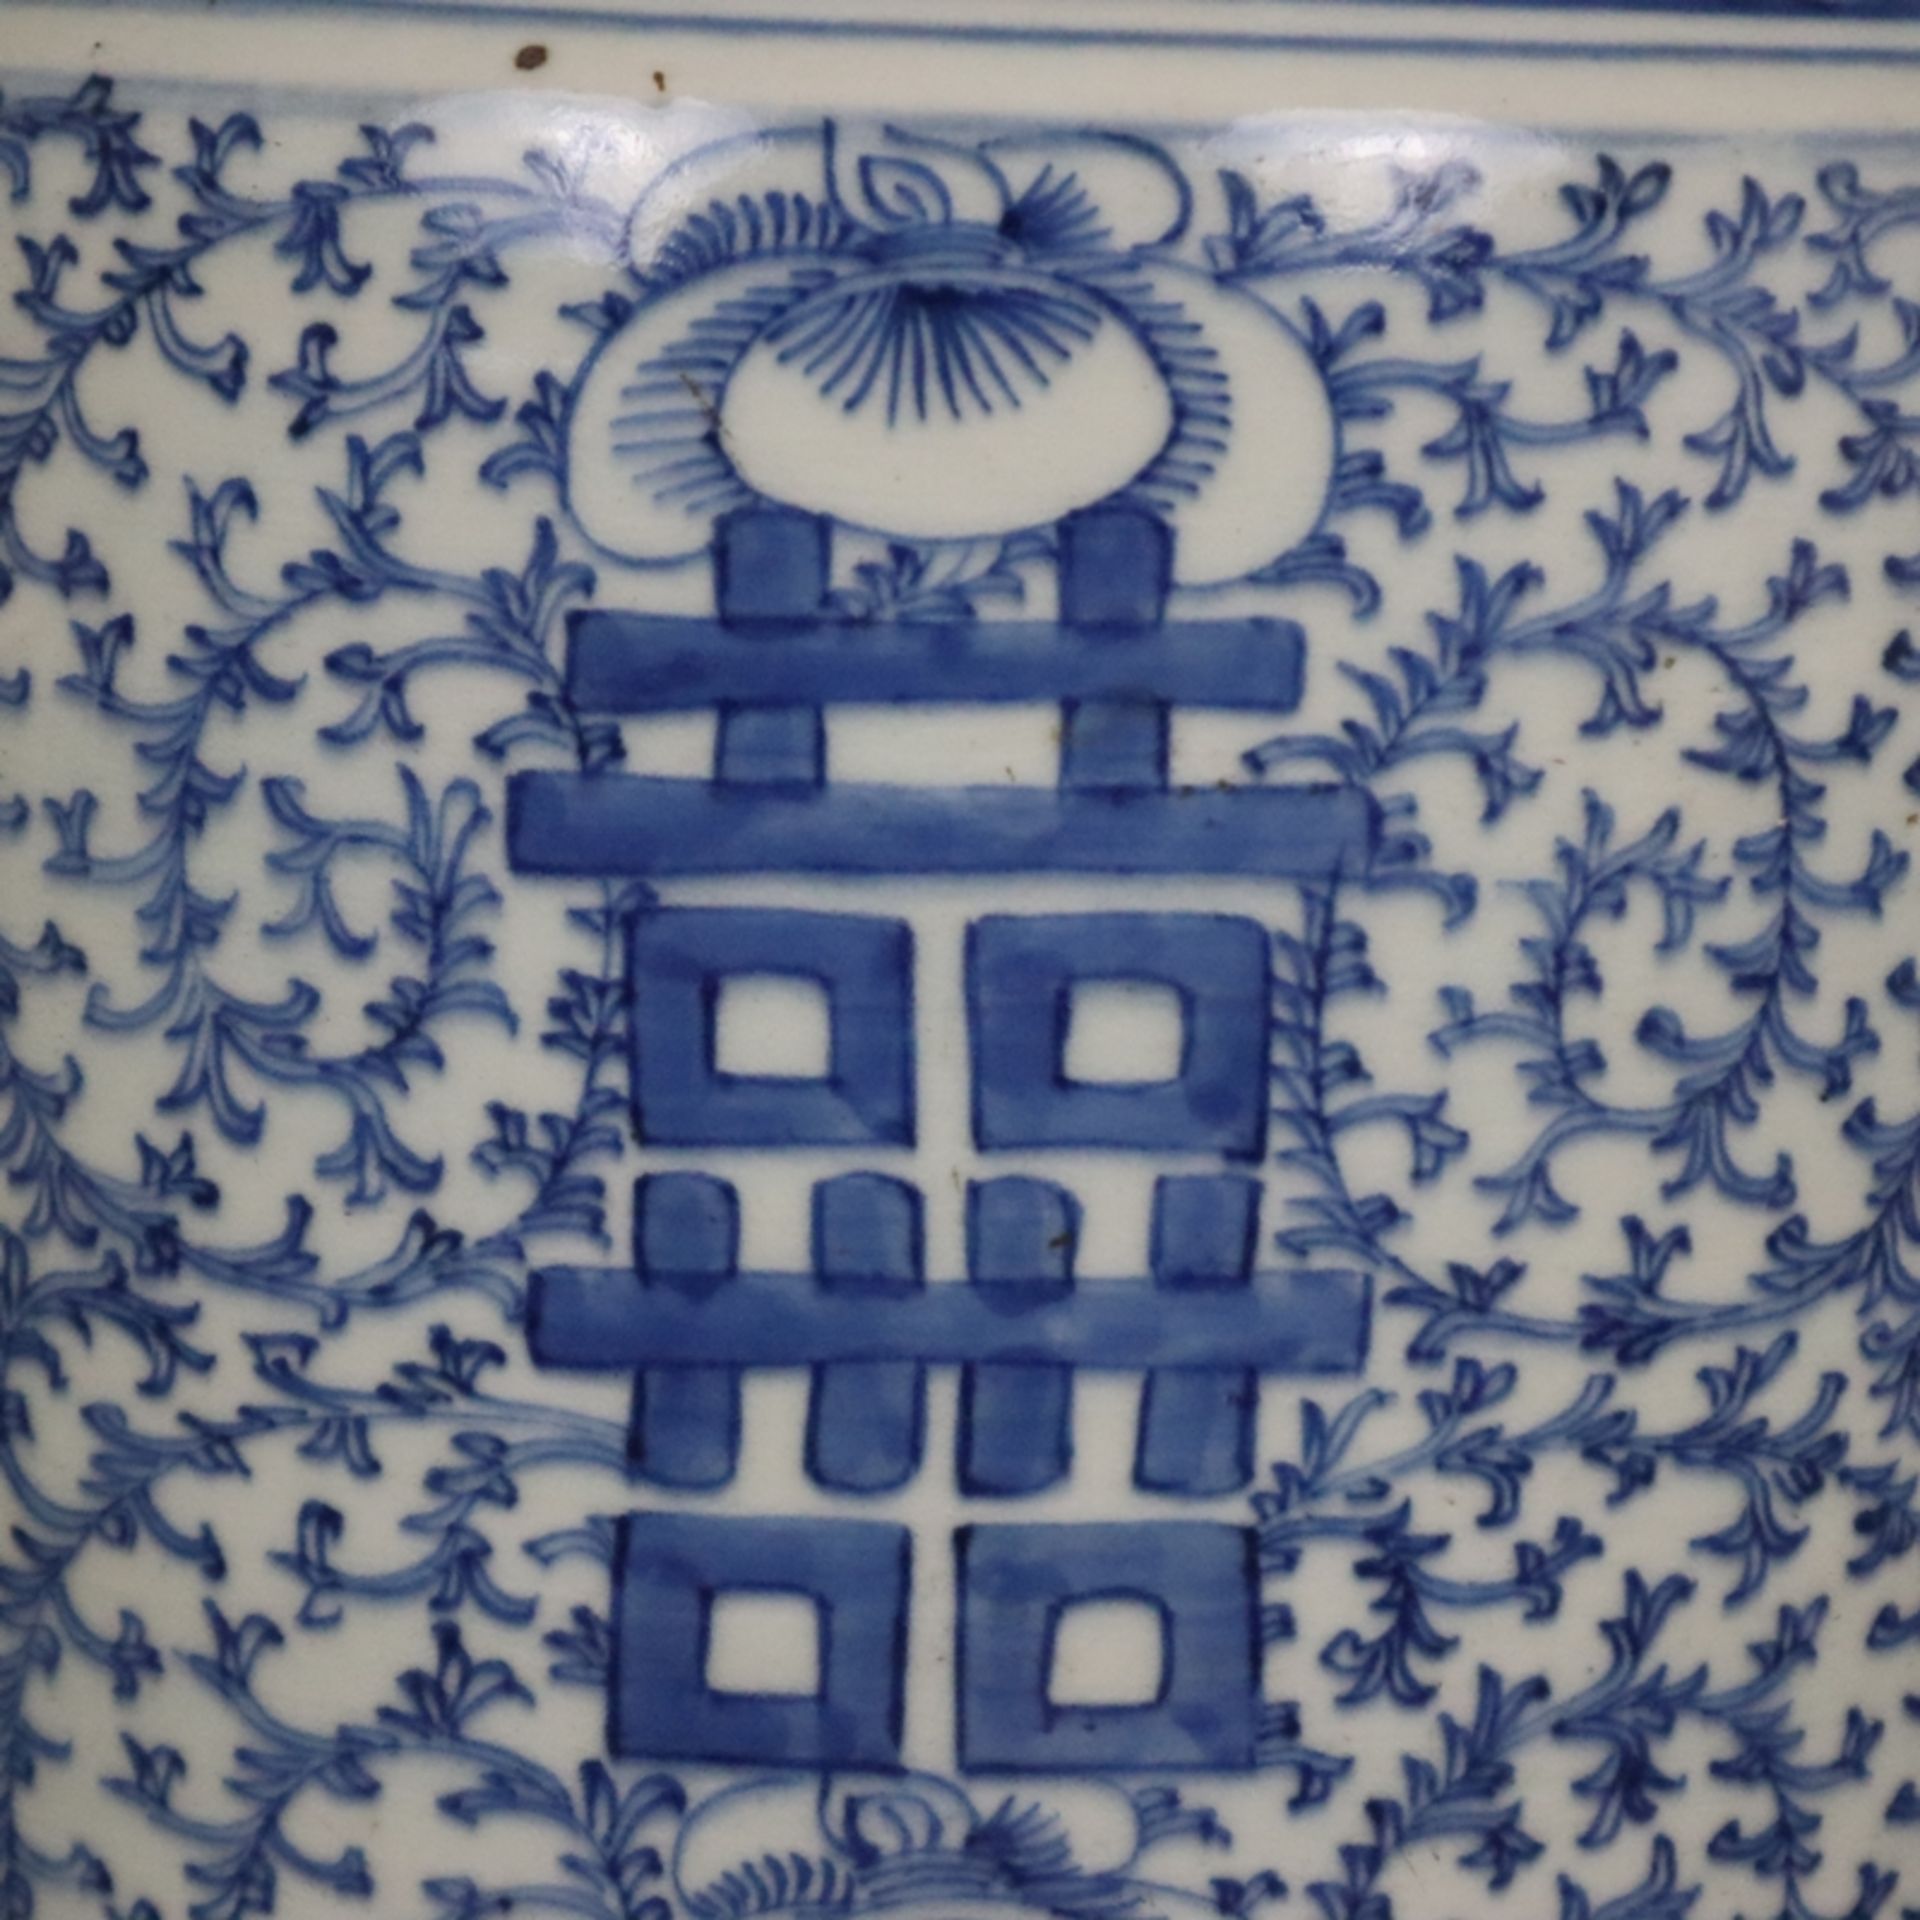 Blau-weiße Bodenvase - China, späte Qing-Dynastie, Tongzhi 1862-1875, sog. „Hochzeitsvase“, auf der - Bild 5 aus 14